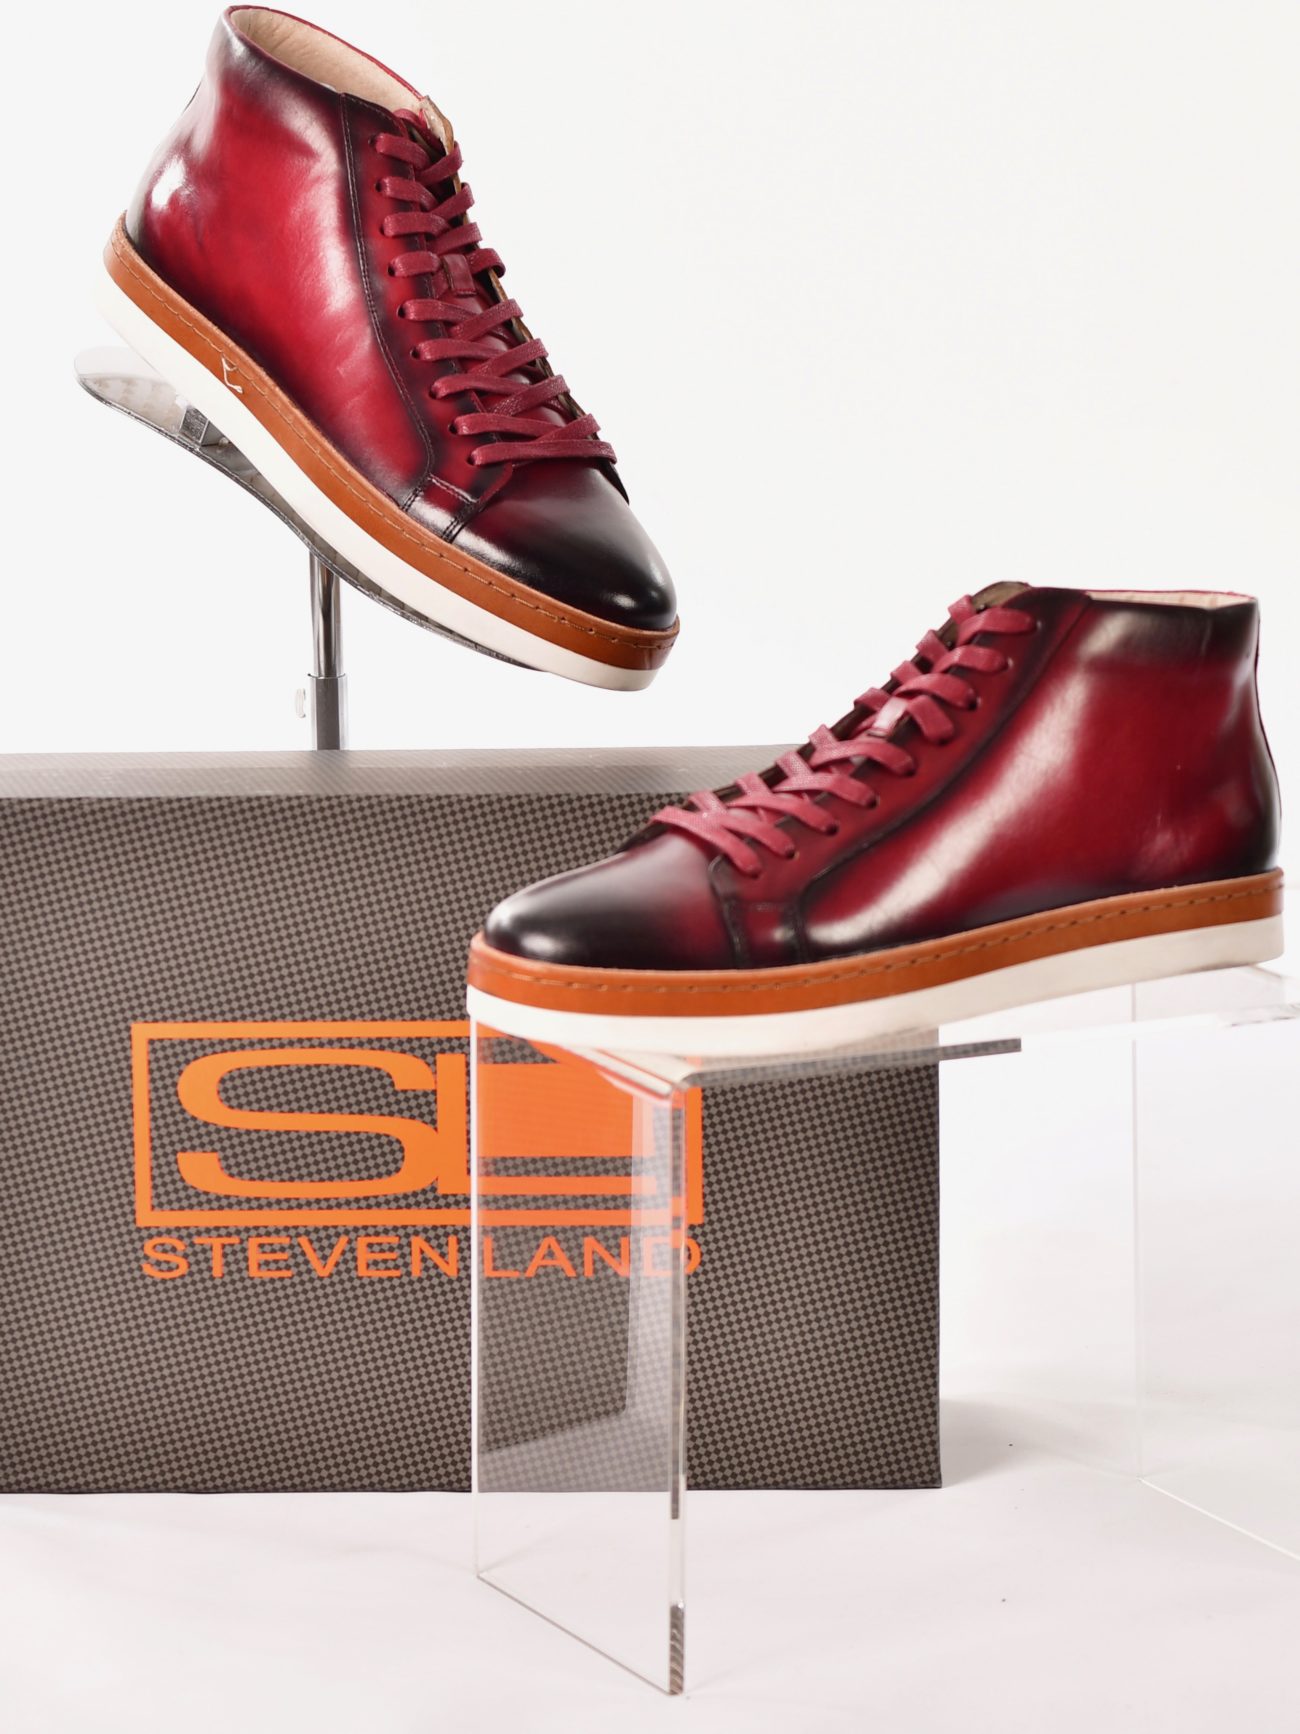 steven land men's dress shoes